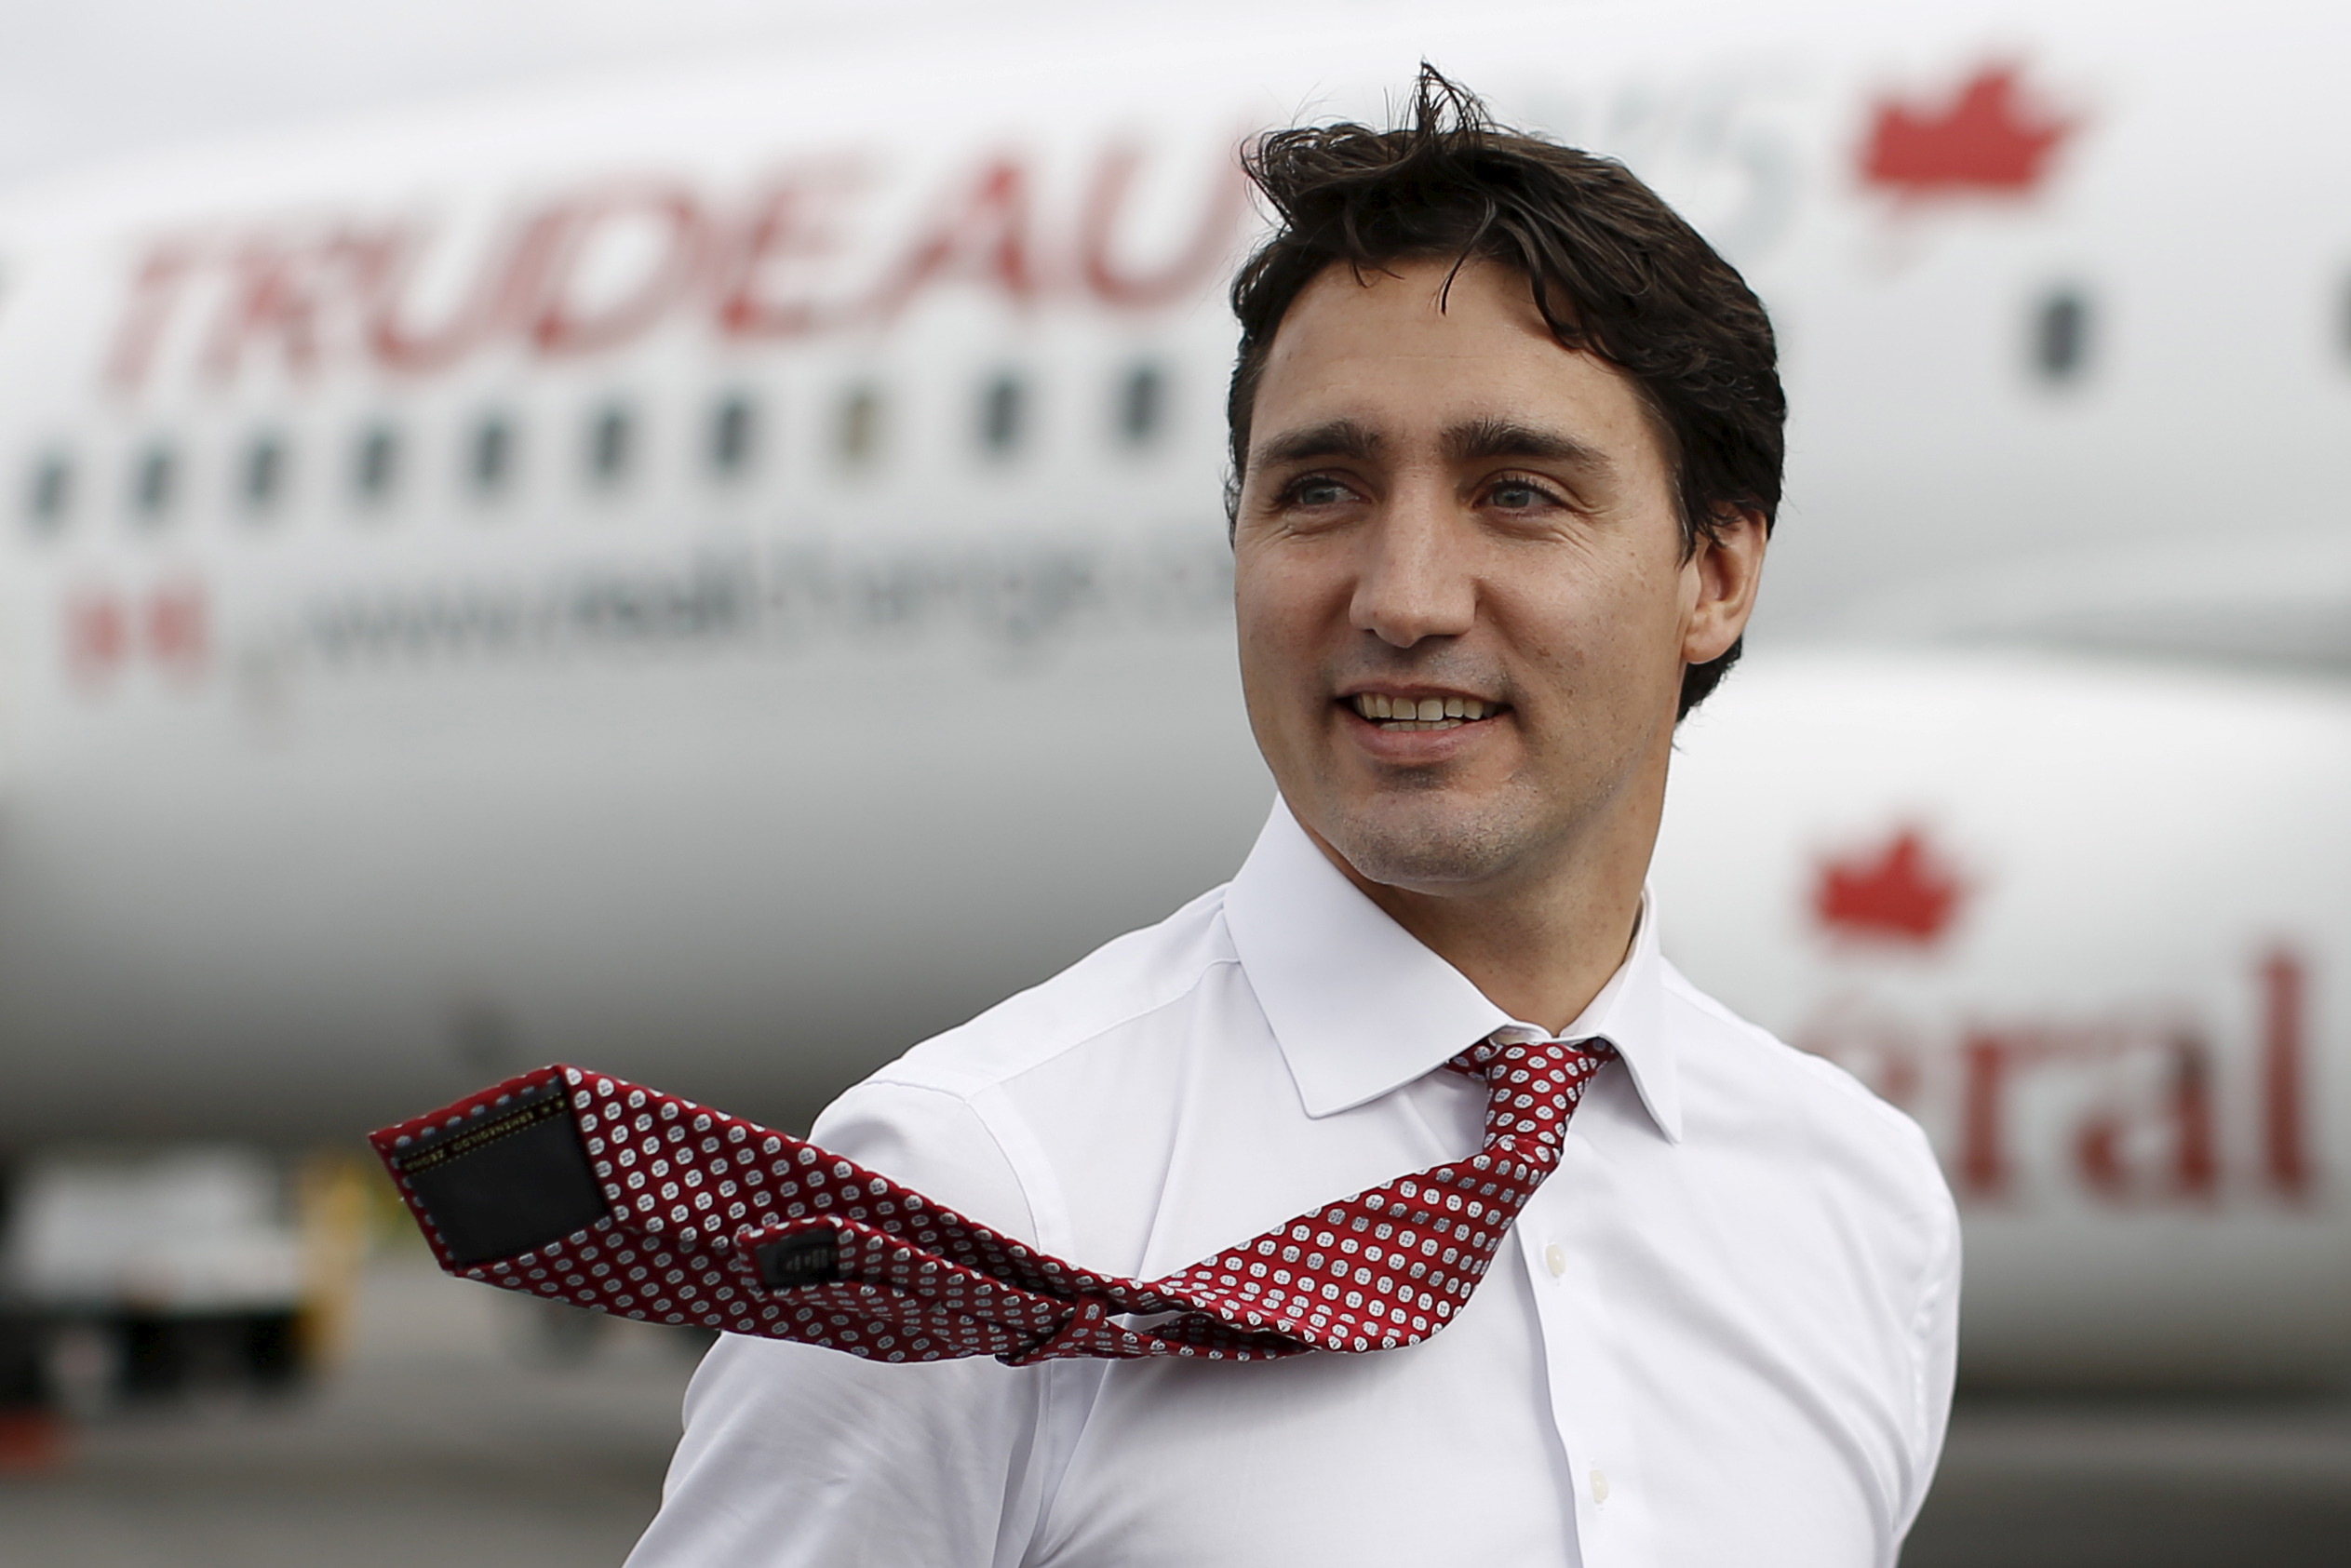 لماذا وجِهت الانتقادات لرئيس الوزراء الكندي؟